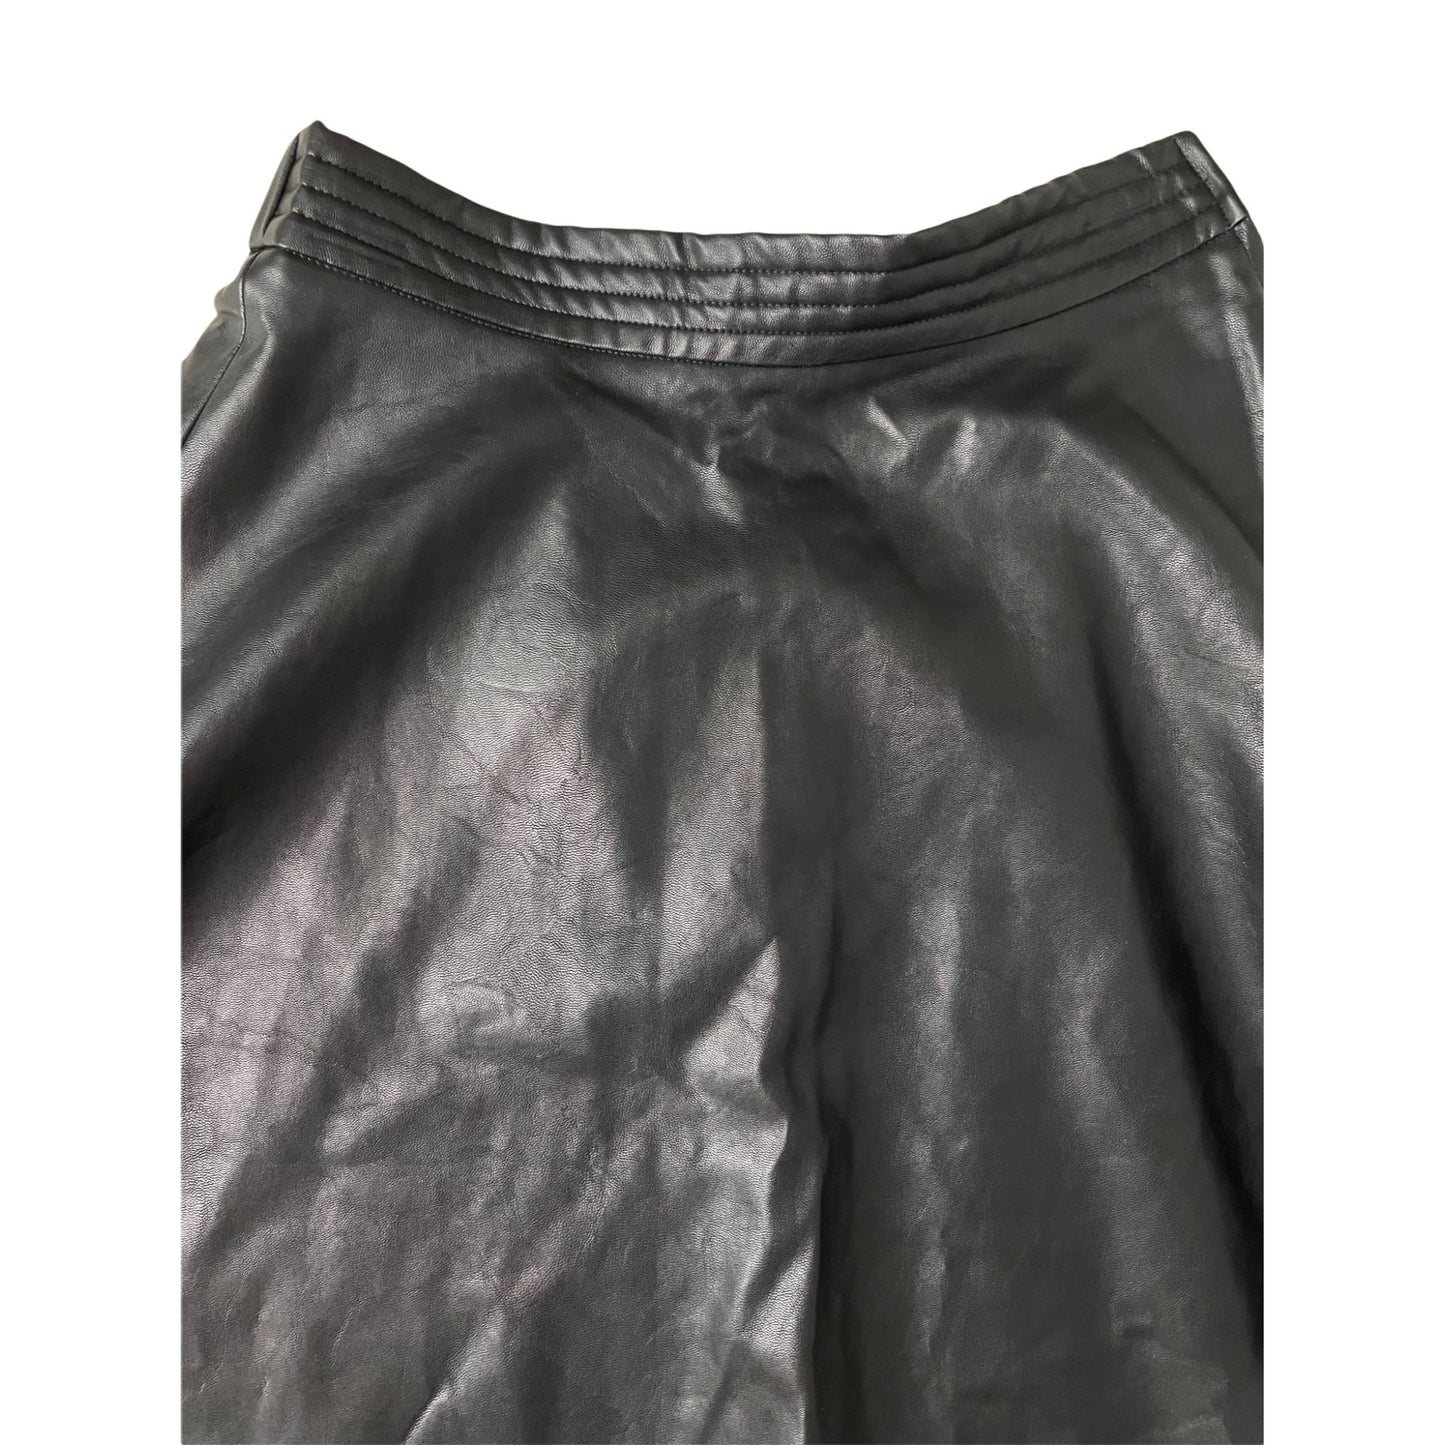 Black Faux Leather Skater Skirt - S/M